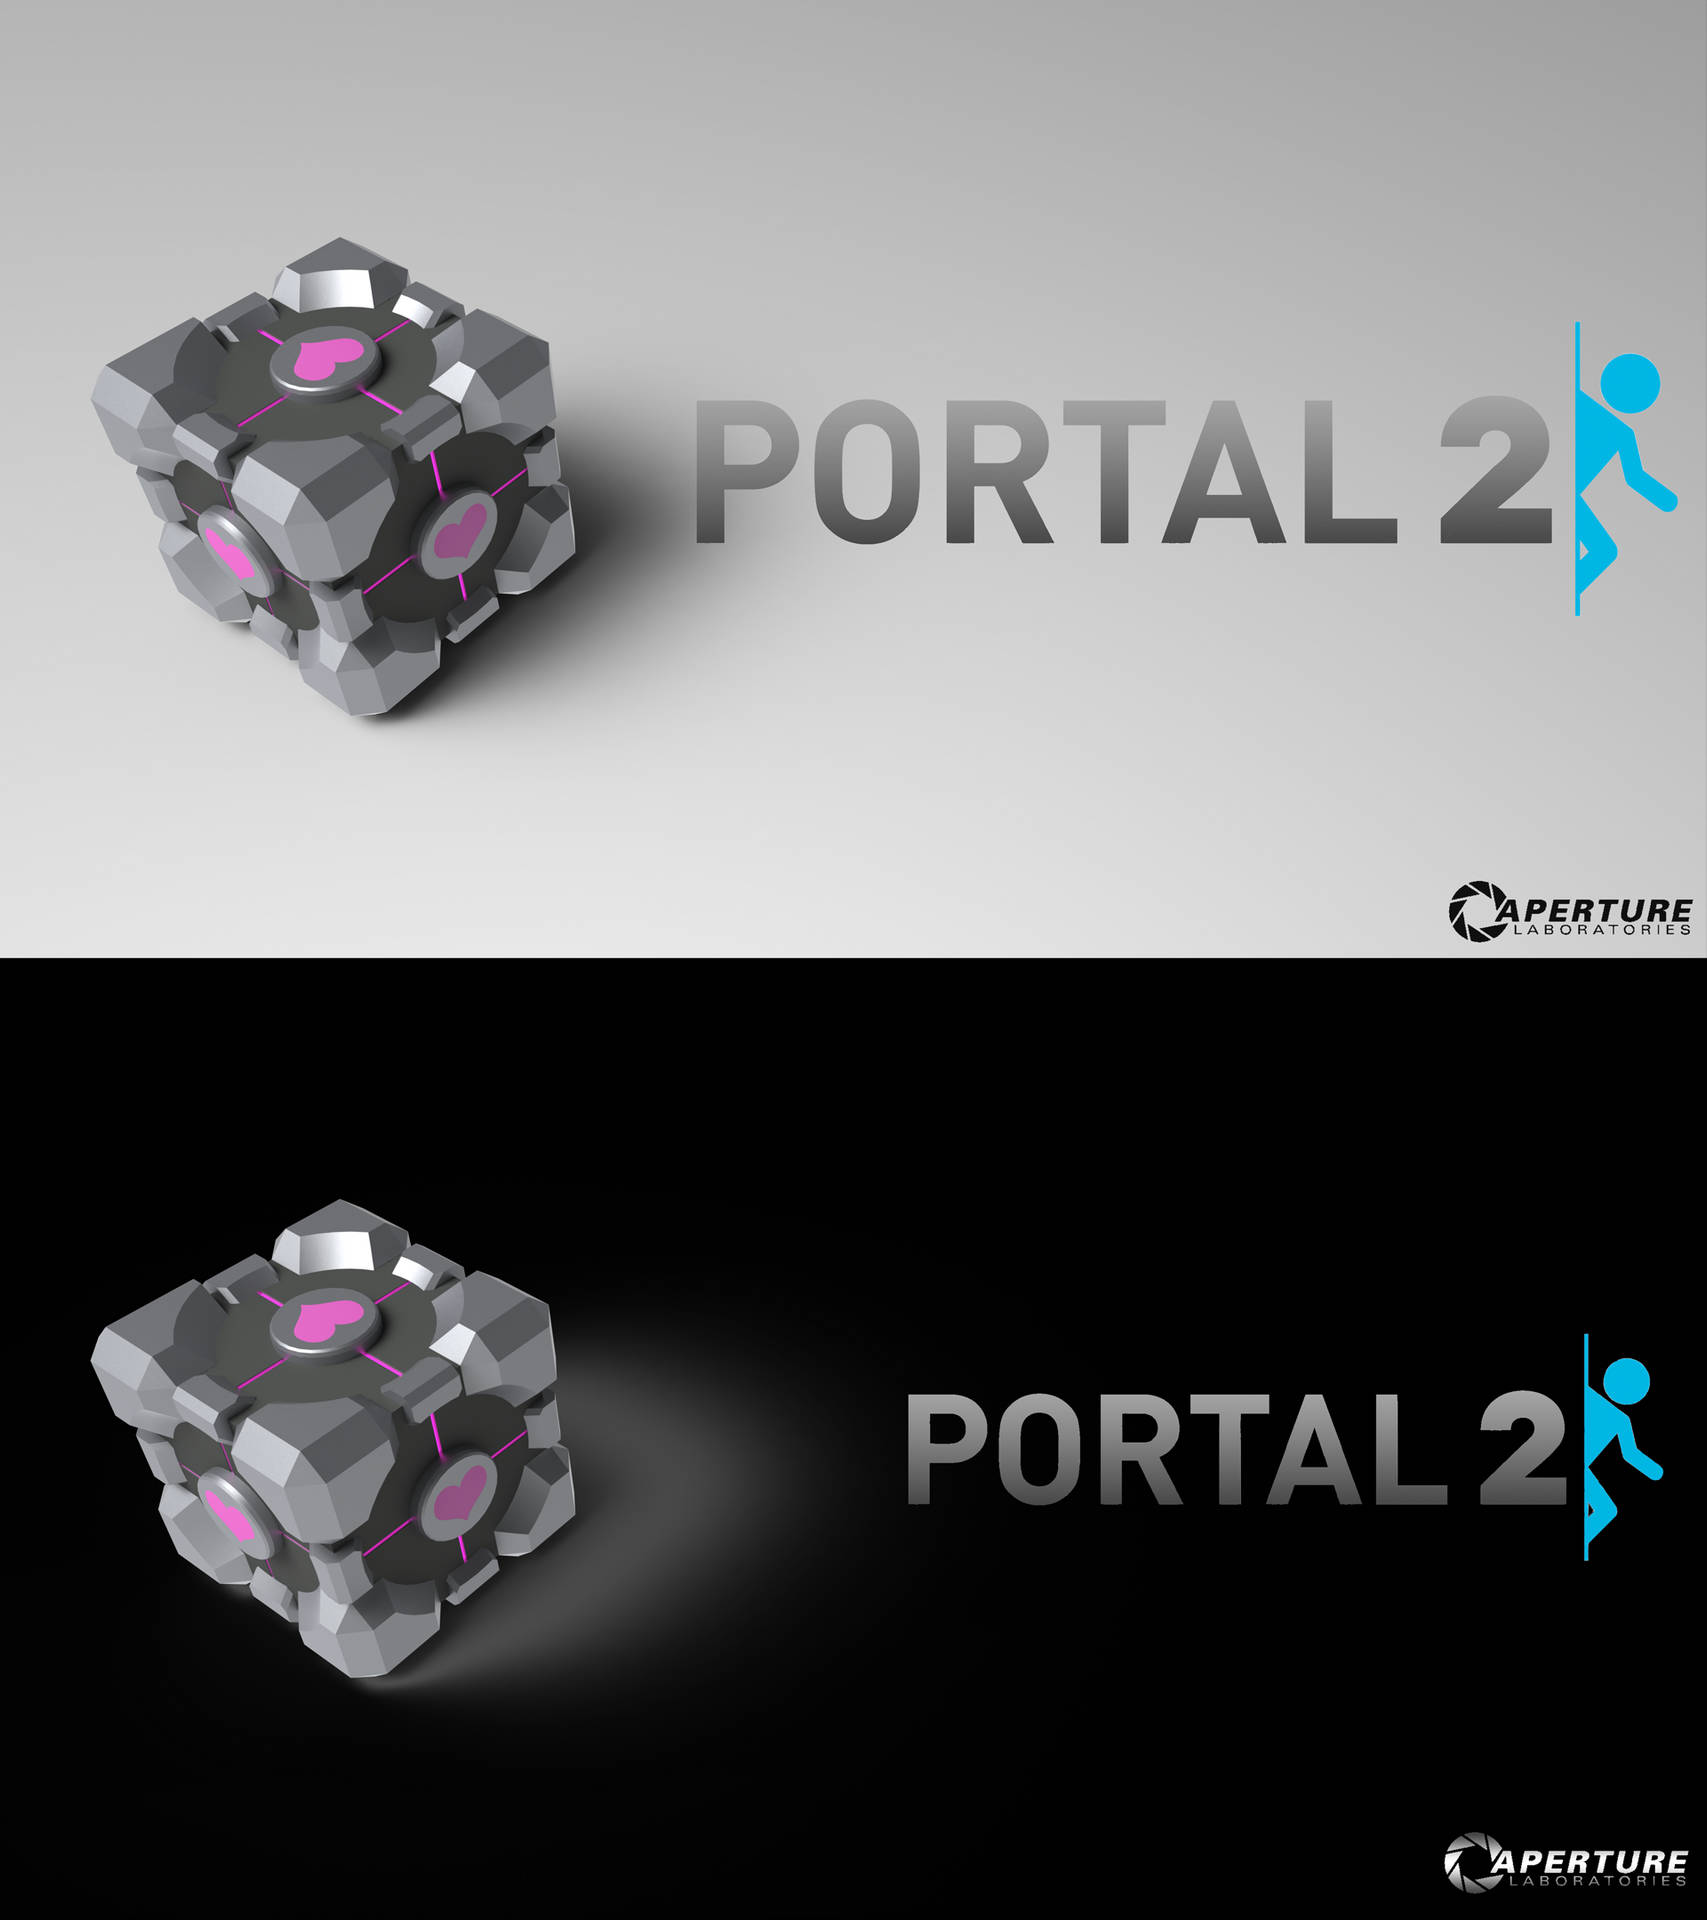 Portal 2 Dual Screen Poster Design Wallpaper